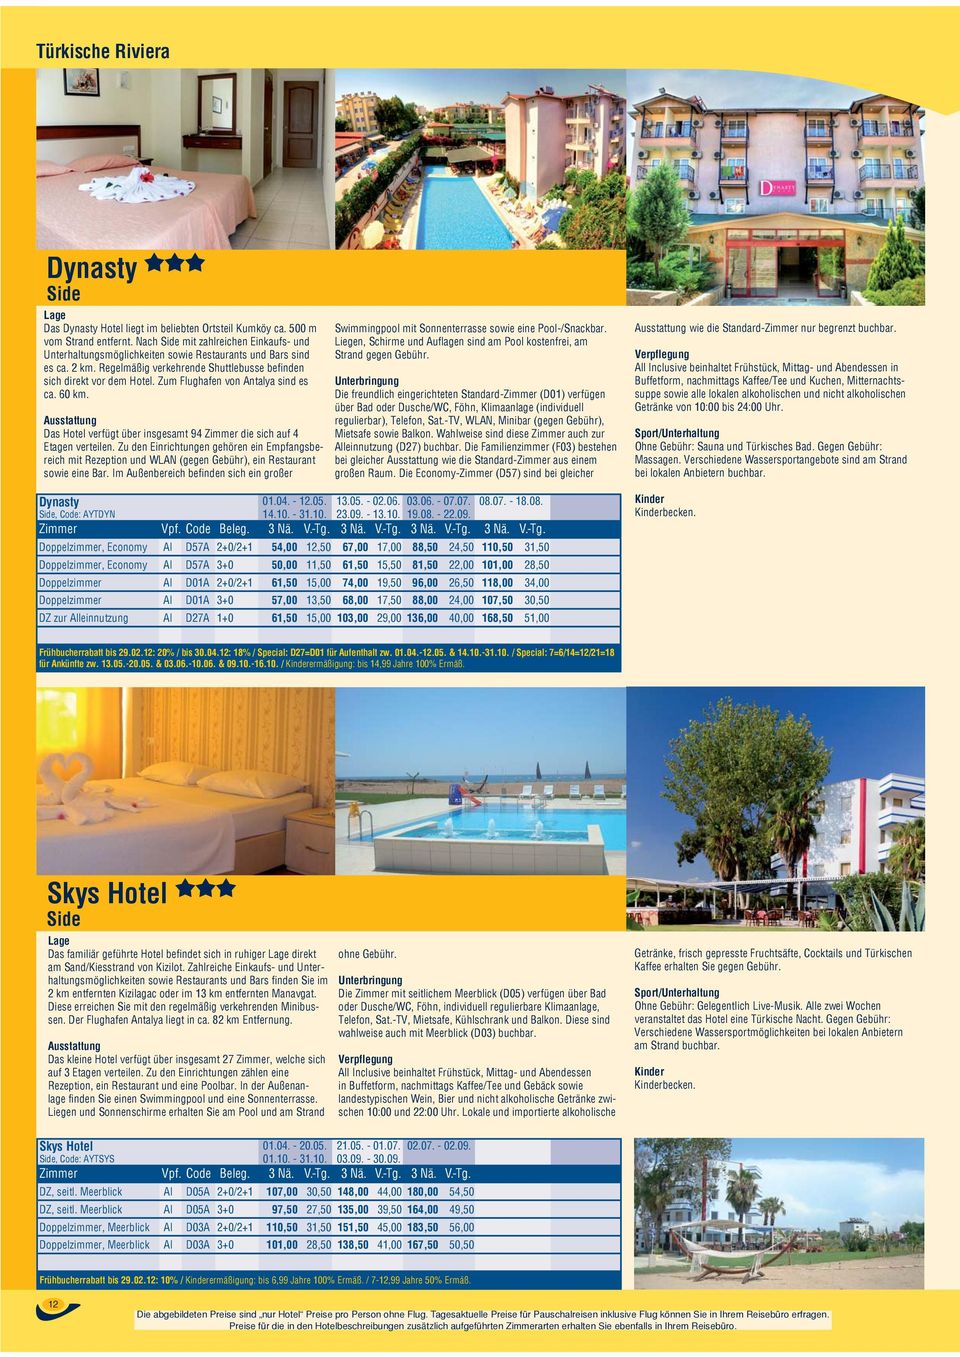 Zum Flughafen von Antalya sind es ca. 60 km. Das Hotel verfügt über insgesamt 94 Zimmer die sich auf 4 Etagen verteilen.